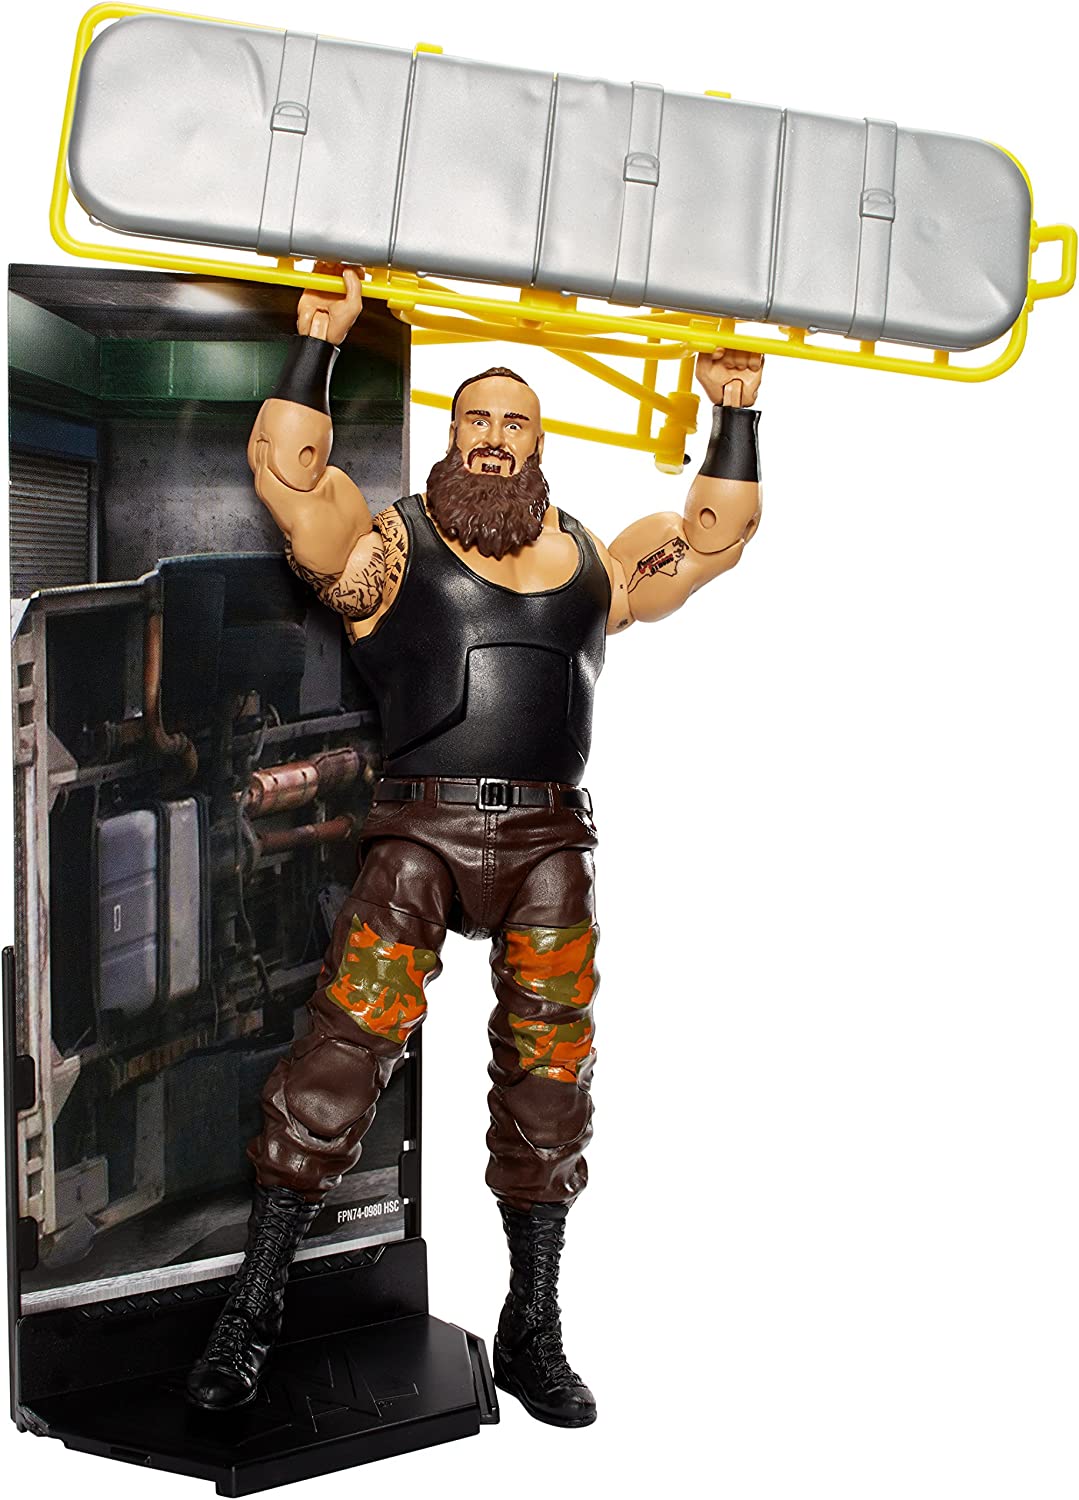 2017 WWE Mattel Elite Collection Series 52 Braun Strowman